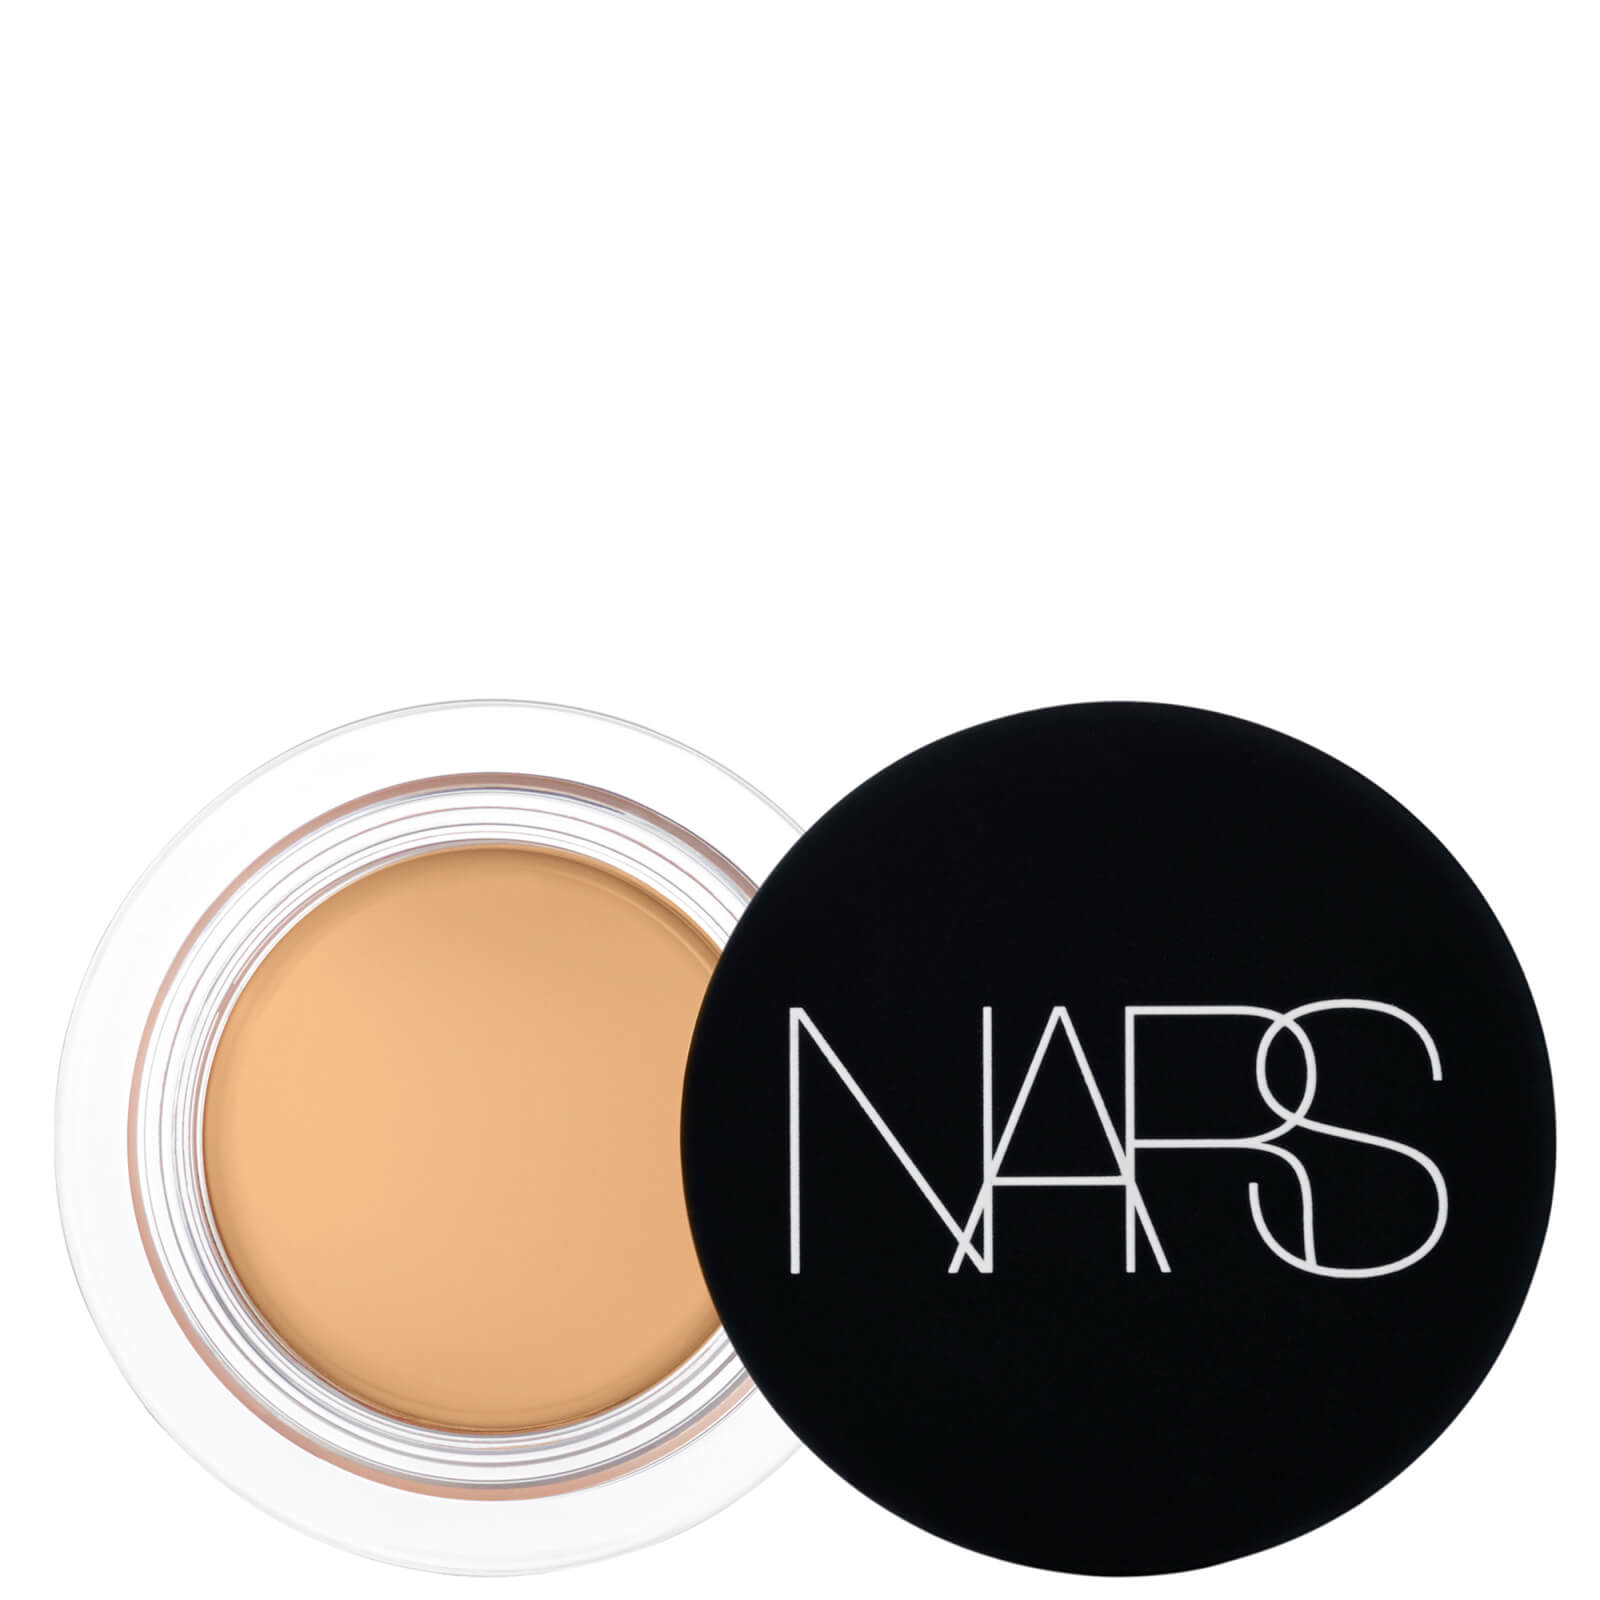 NARS Soft Matte Complete Concealer 5g (Various Shades) - Praline